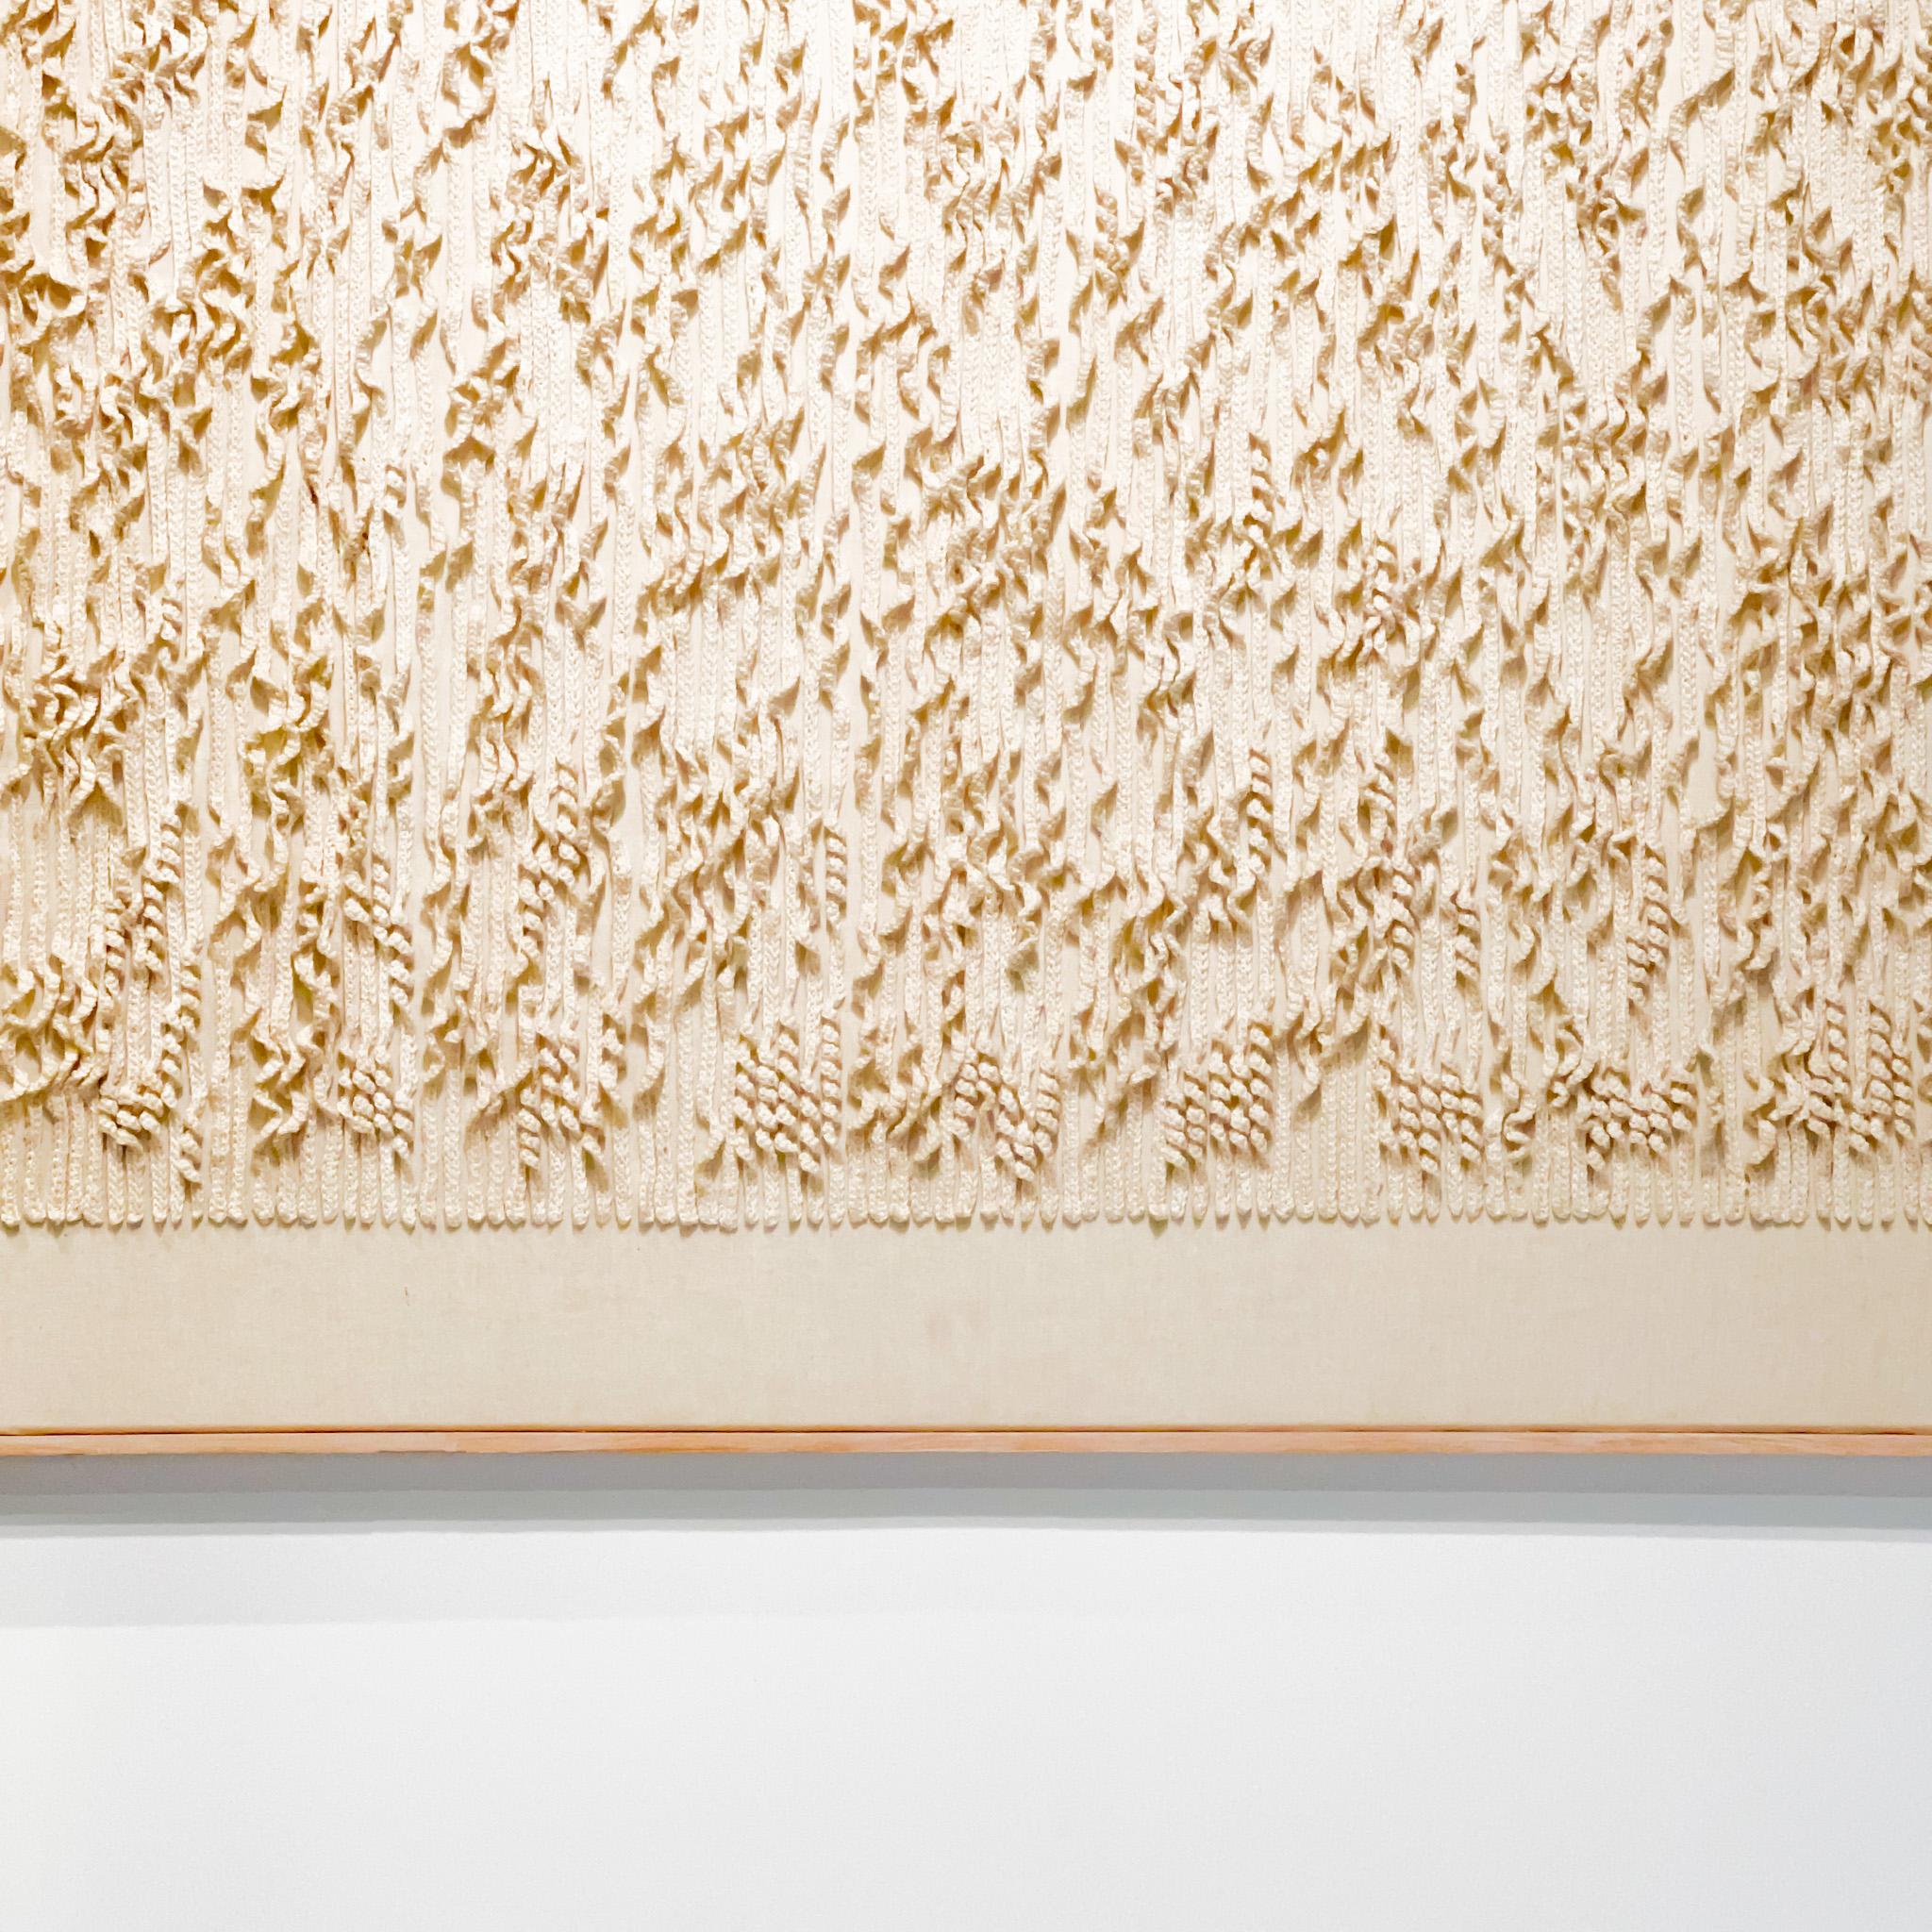 Niederländisches minimalistisches / Zero Textil-Kunstwerk aus gewebten Linien mit weißem Stoff (Handgewebt)